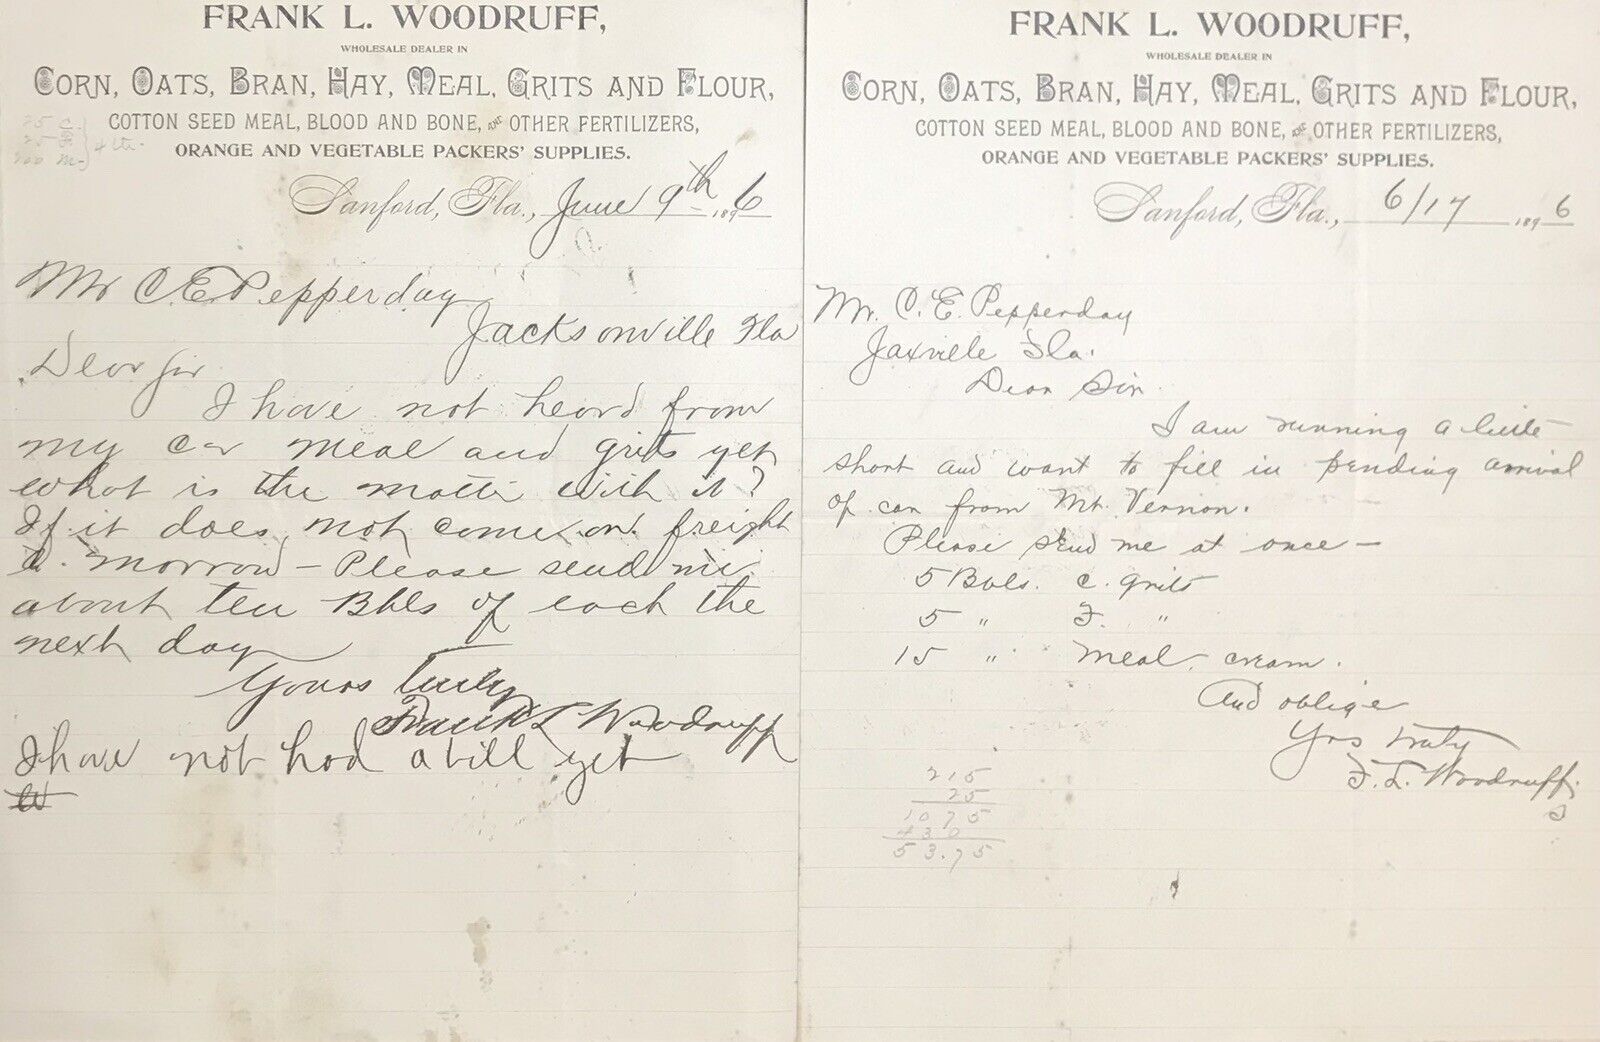 TWO 1896 WHOLESALE DEALER LETTER/NOTES. LANFORD FLORIDA 